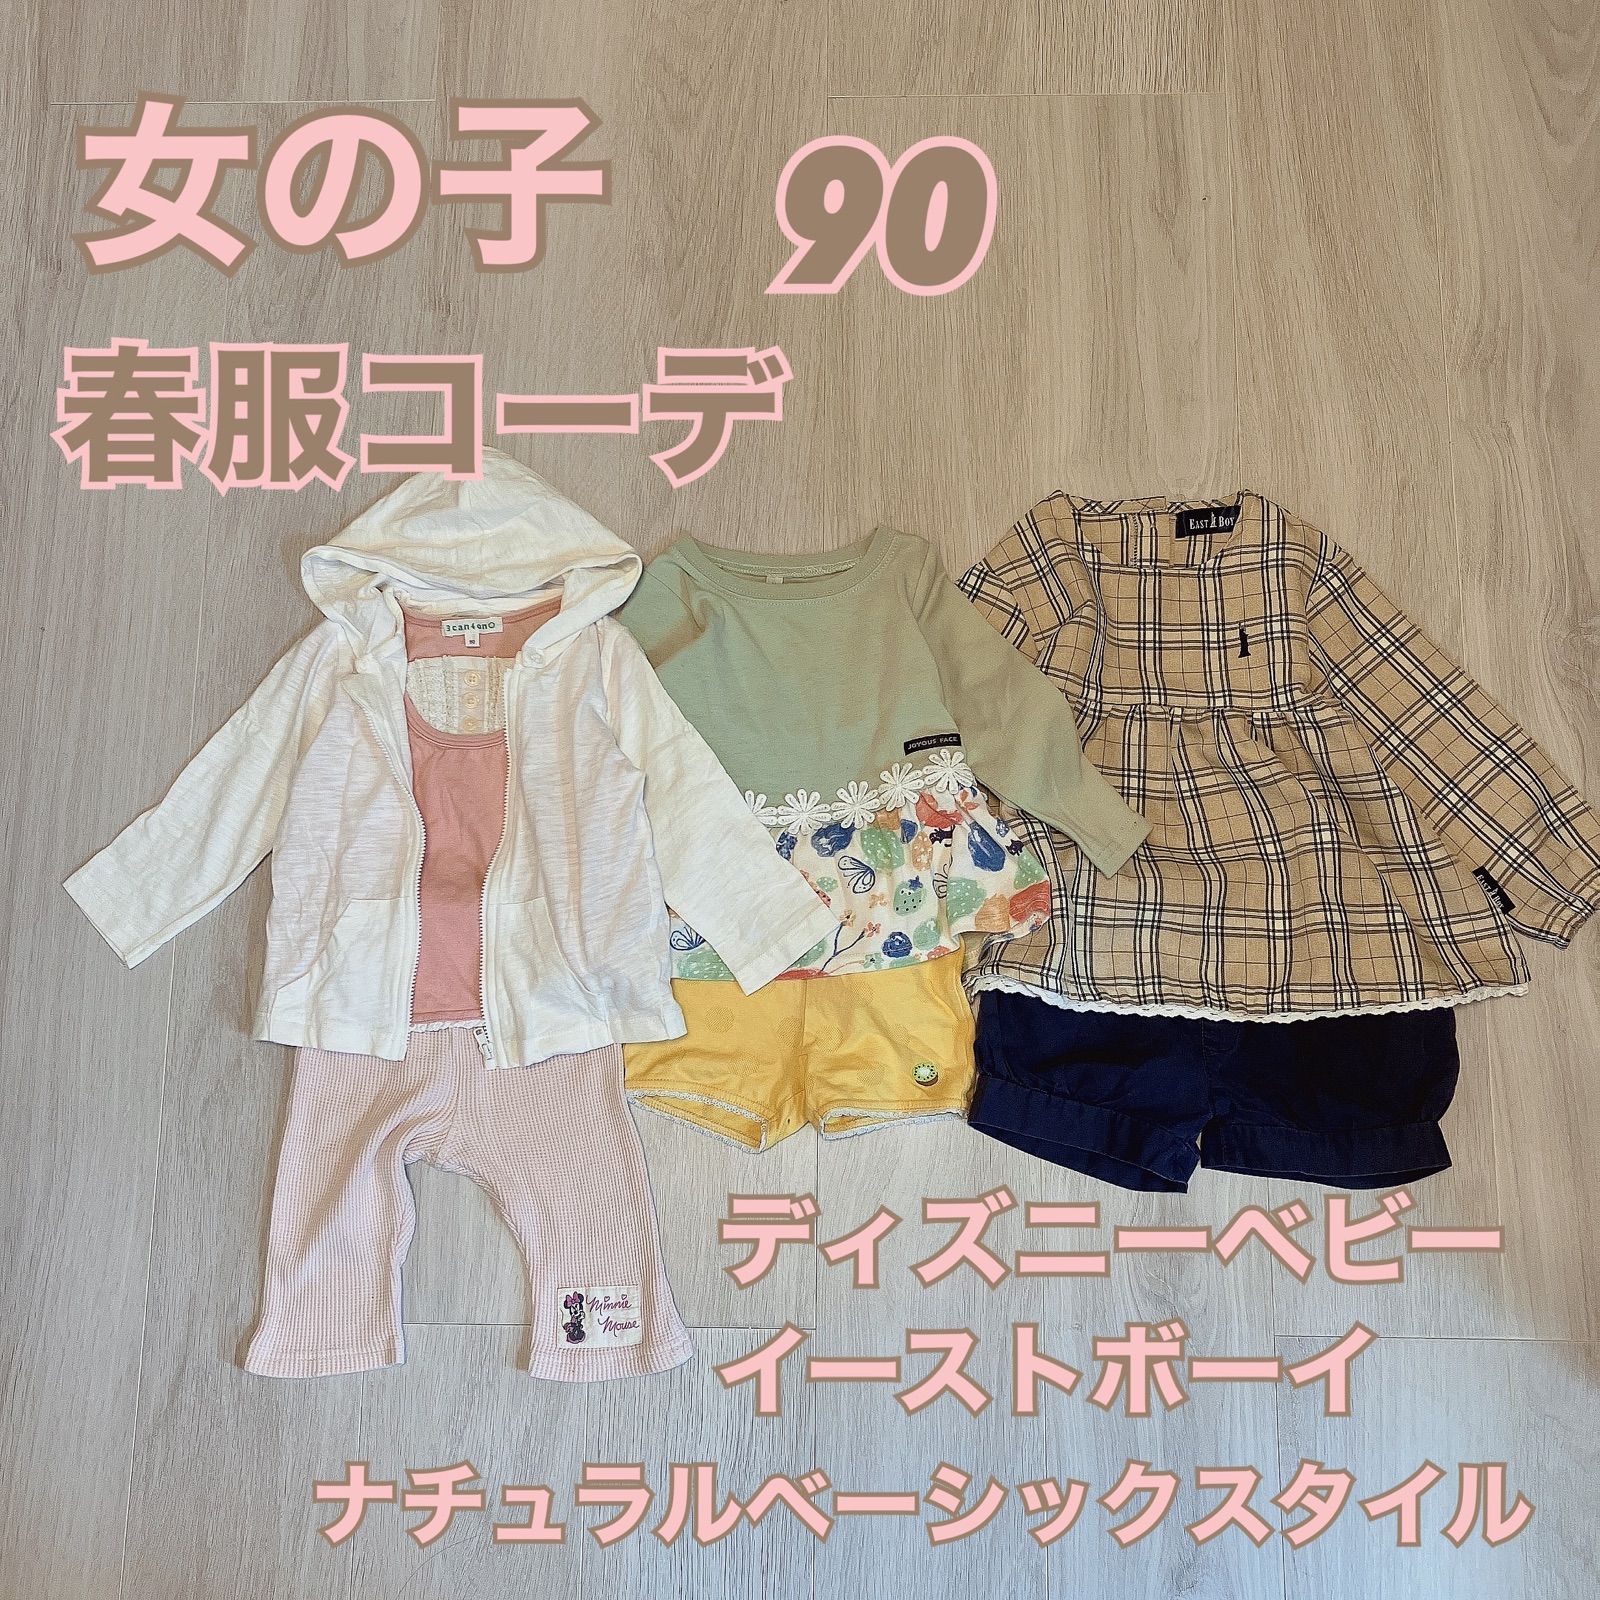 【95サイズ】まとめ売り 夏用コーディネートセット トップス ボトムス